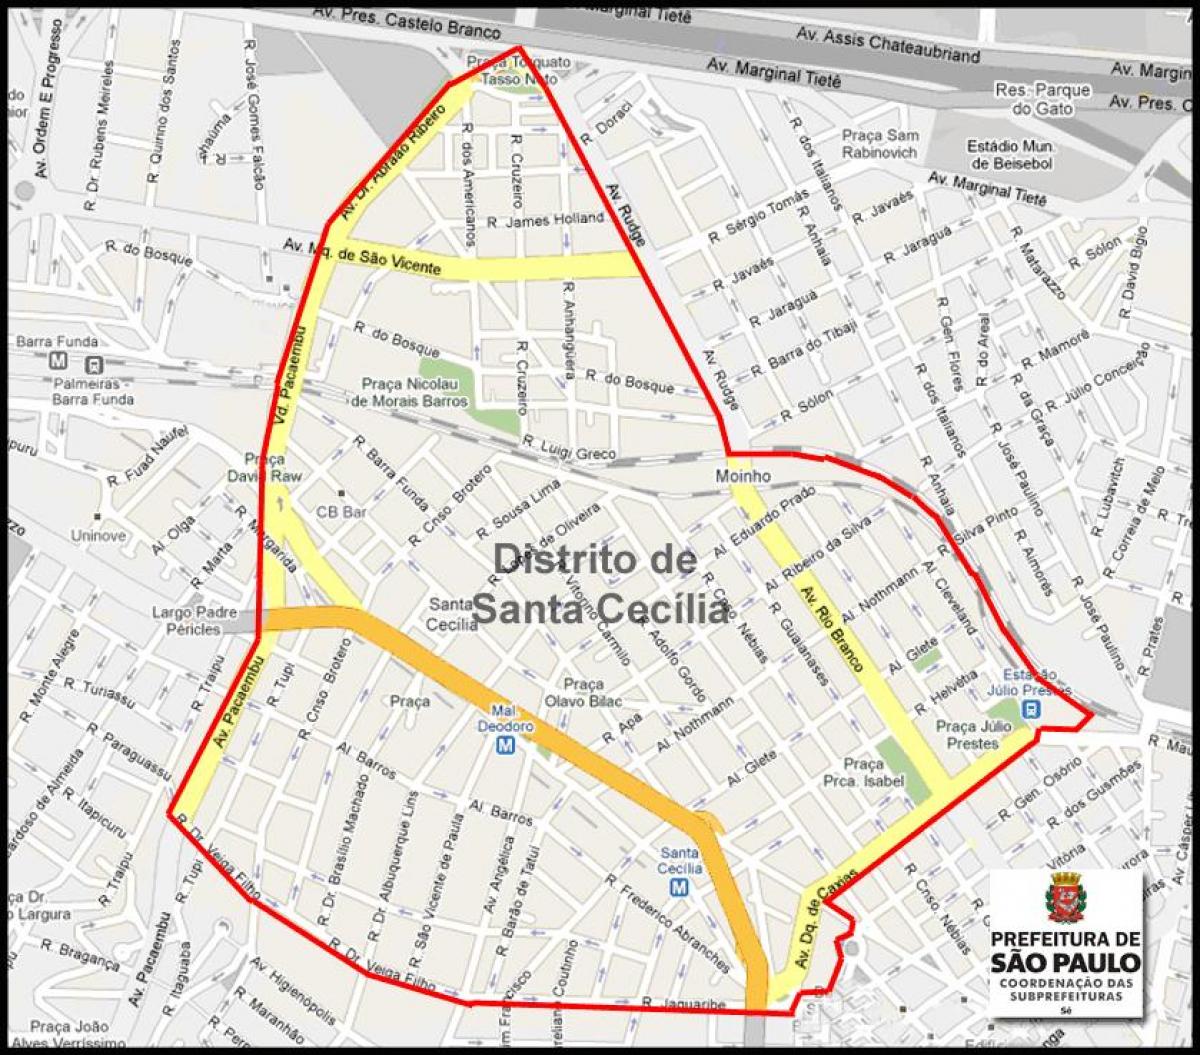 Kort af Santa Cecília Sao Paulo